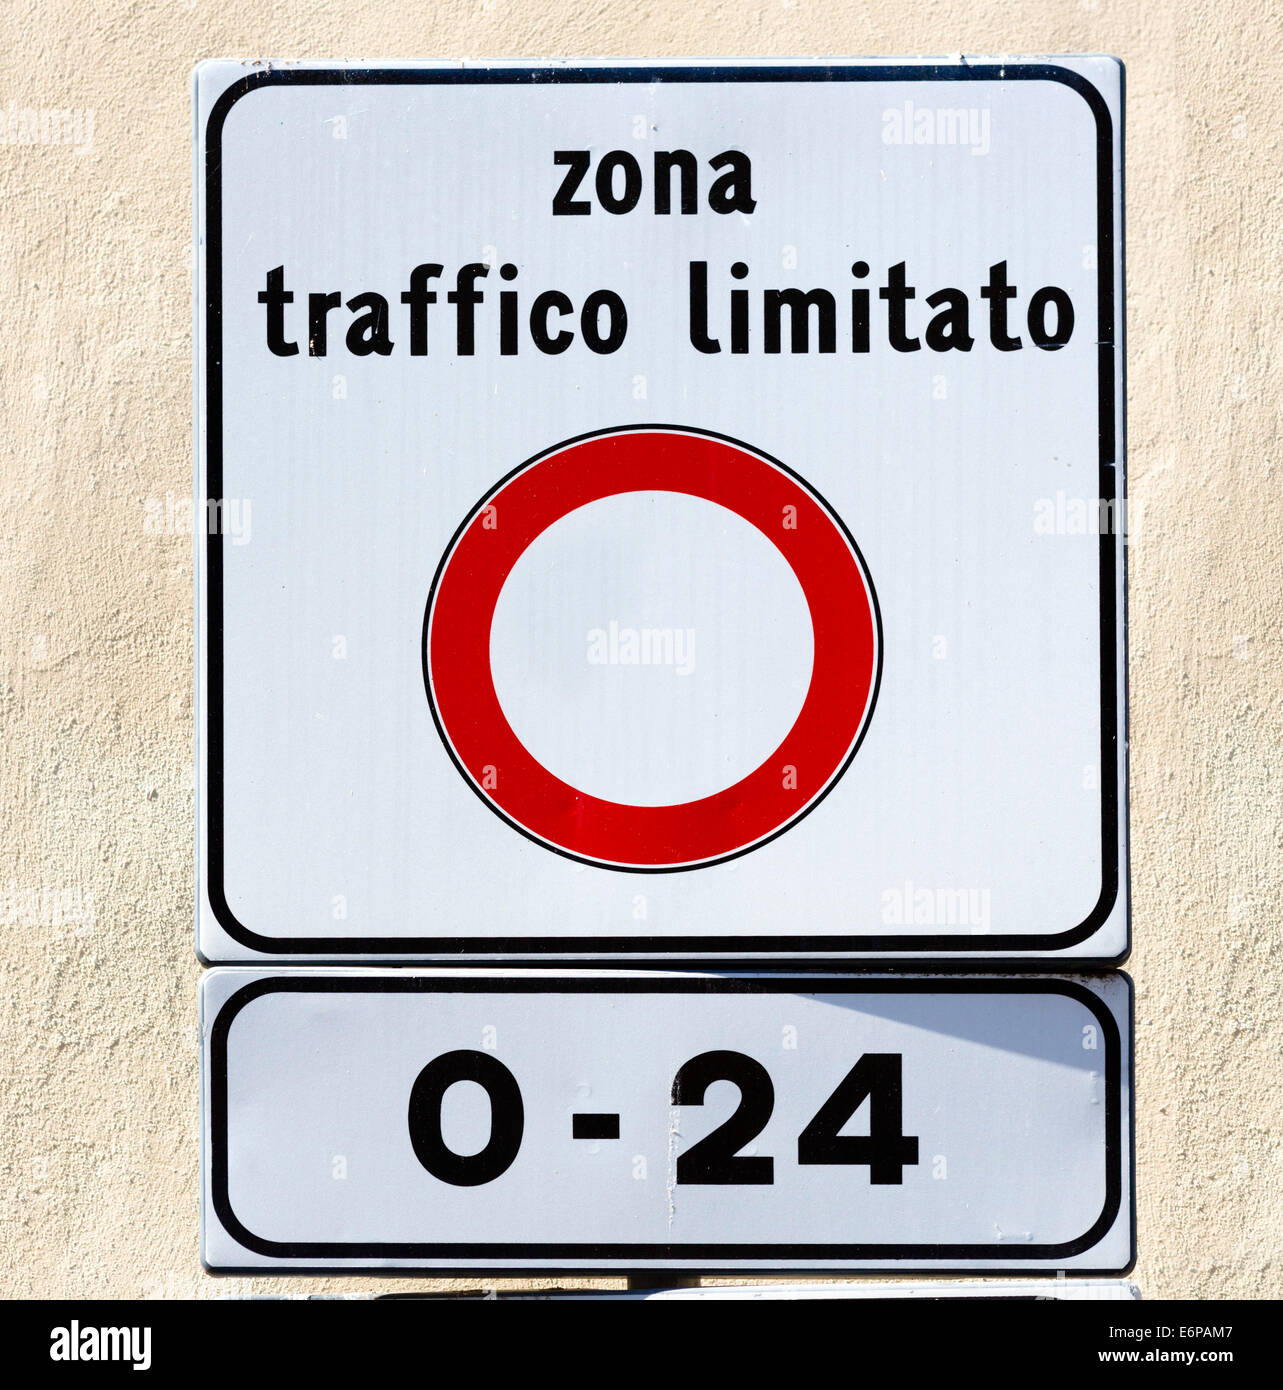 Zona Traffico Limitato signe, restreindre la circulation dans le centre historique de nombreuses villes italiennes, Reggio Emilia, Italie Banque D'Images